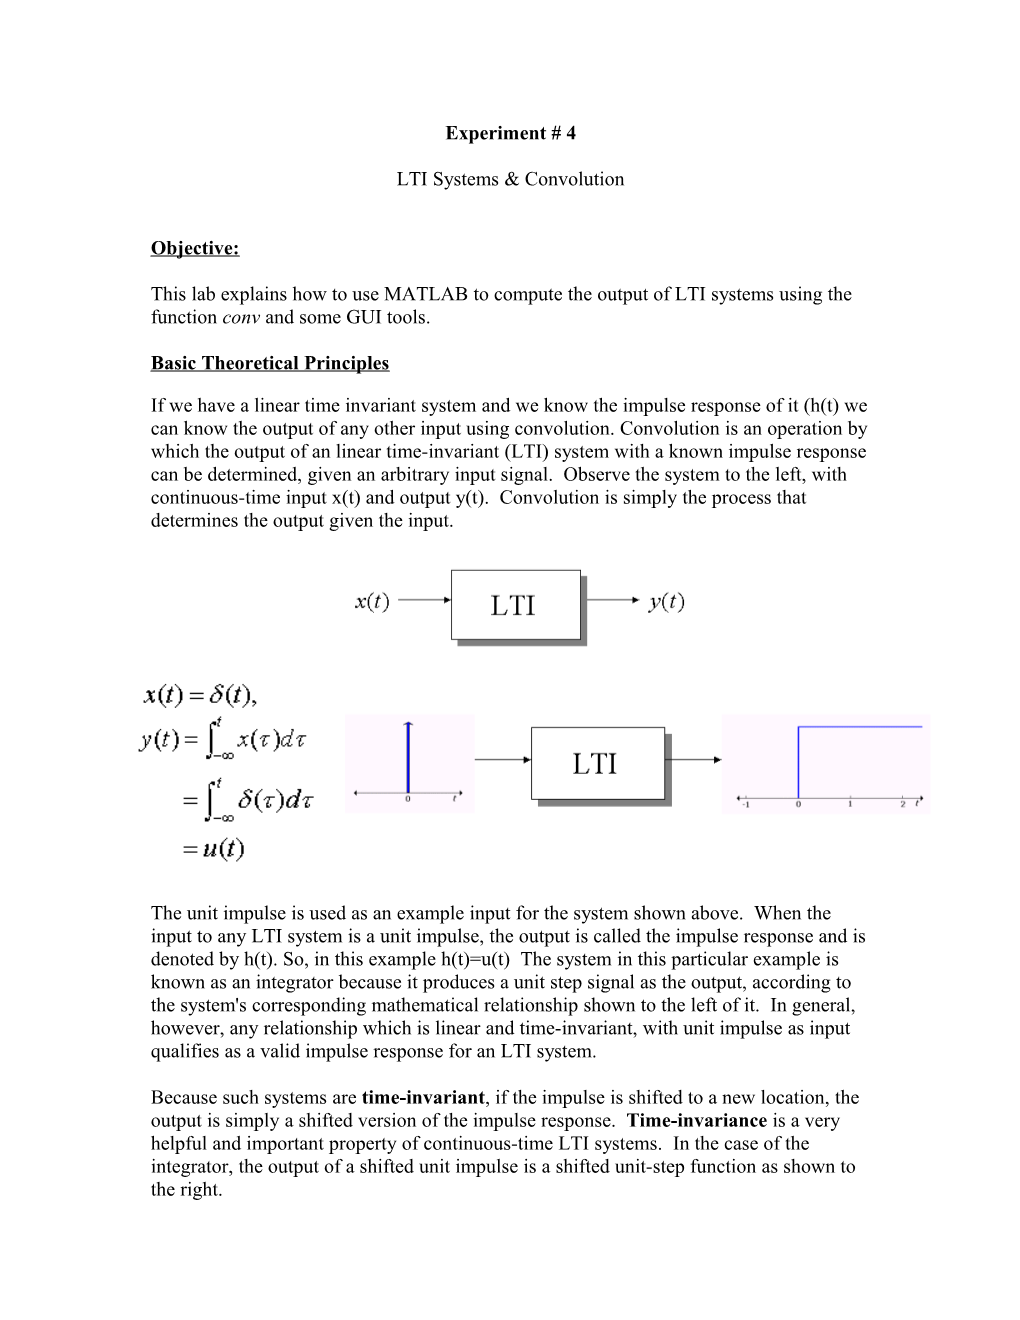 LTI Systems & Convolution